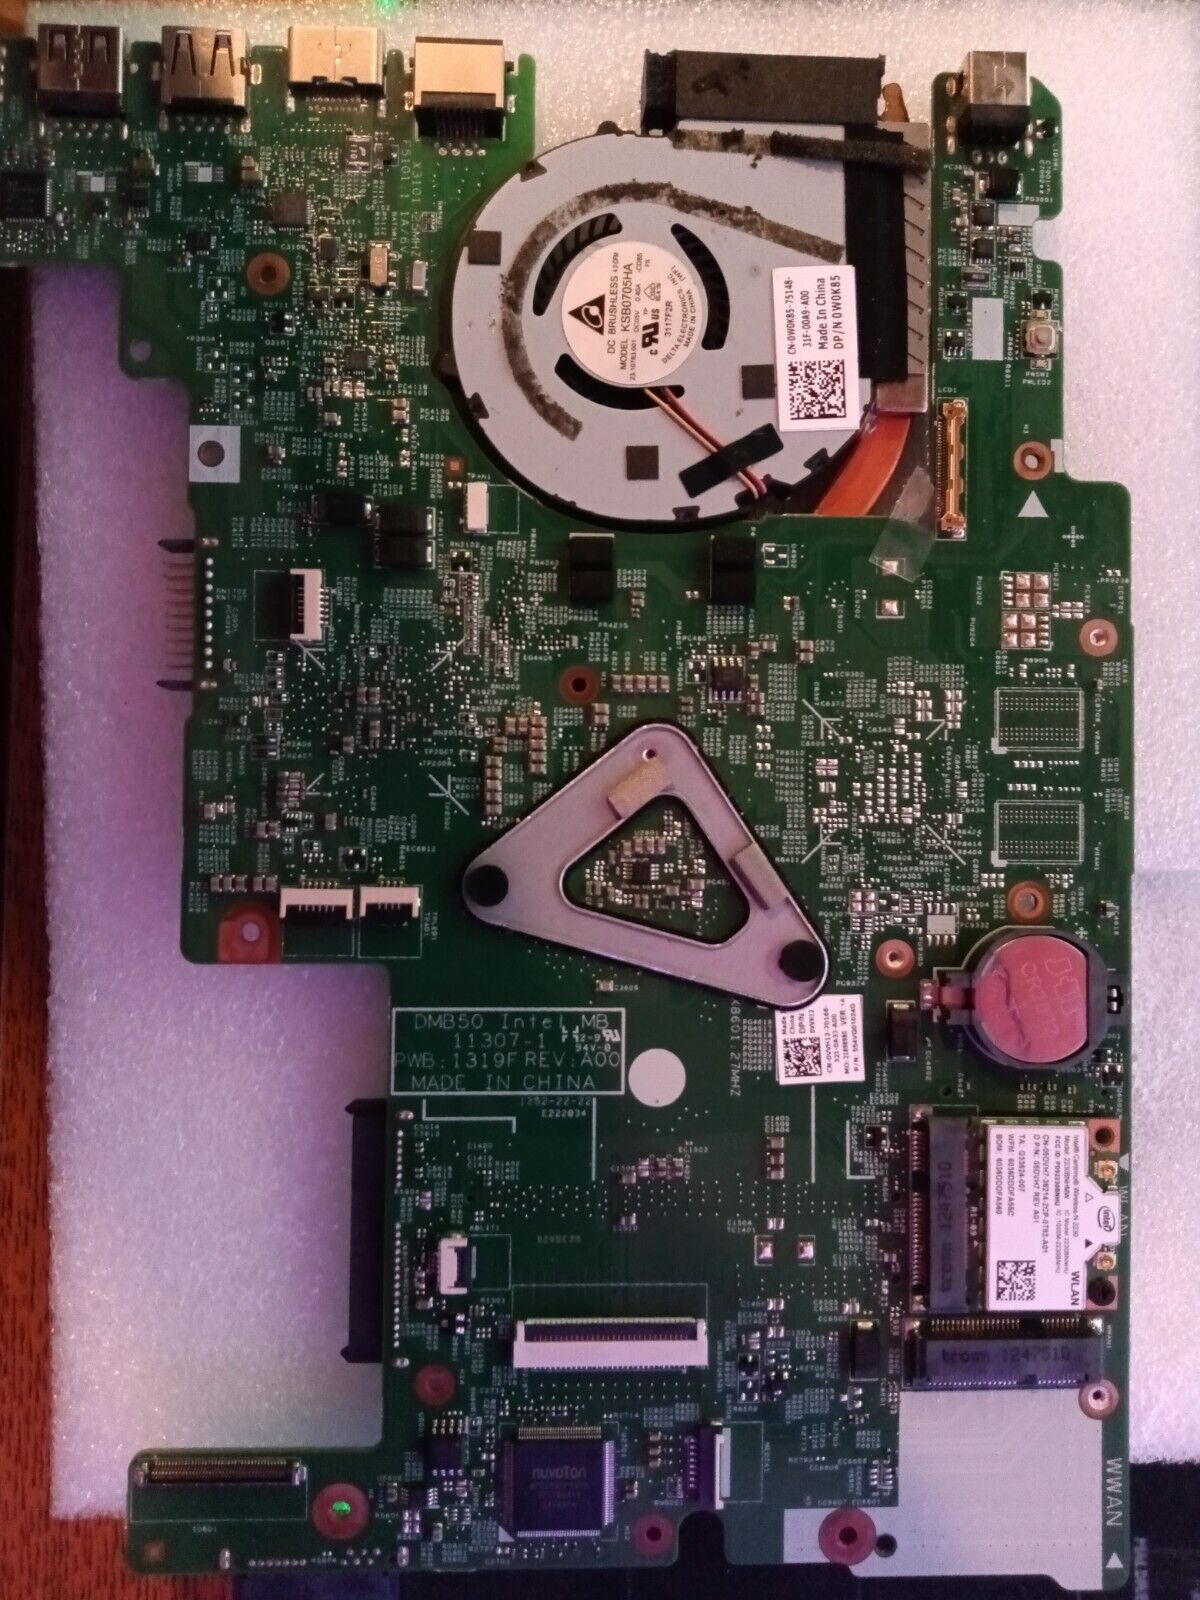  Dell Inspiron 15Z 5523 CN-0VVH12 + 32 Gb SSD+ Fan, i7-3537U Laptop Motherboard